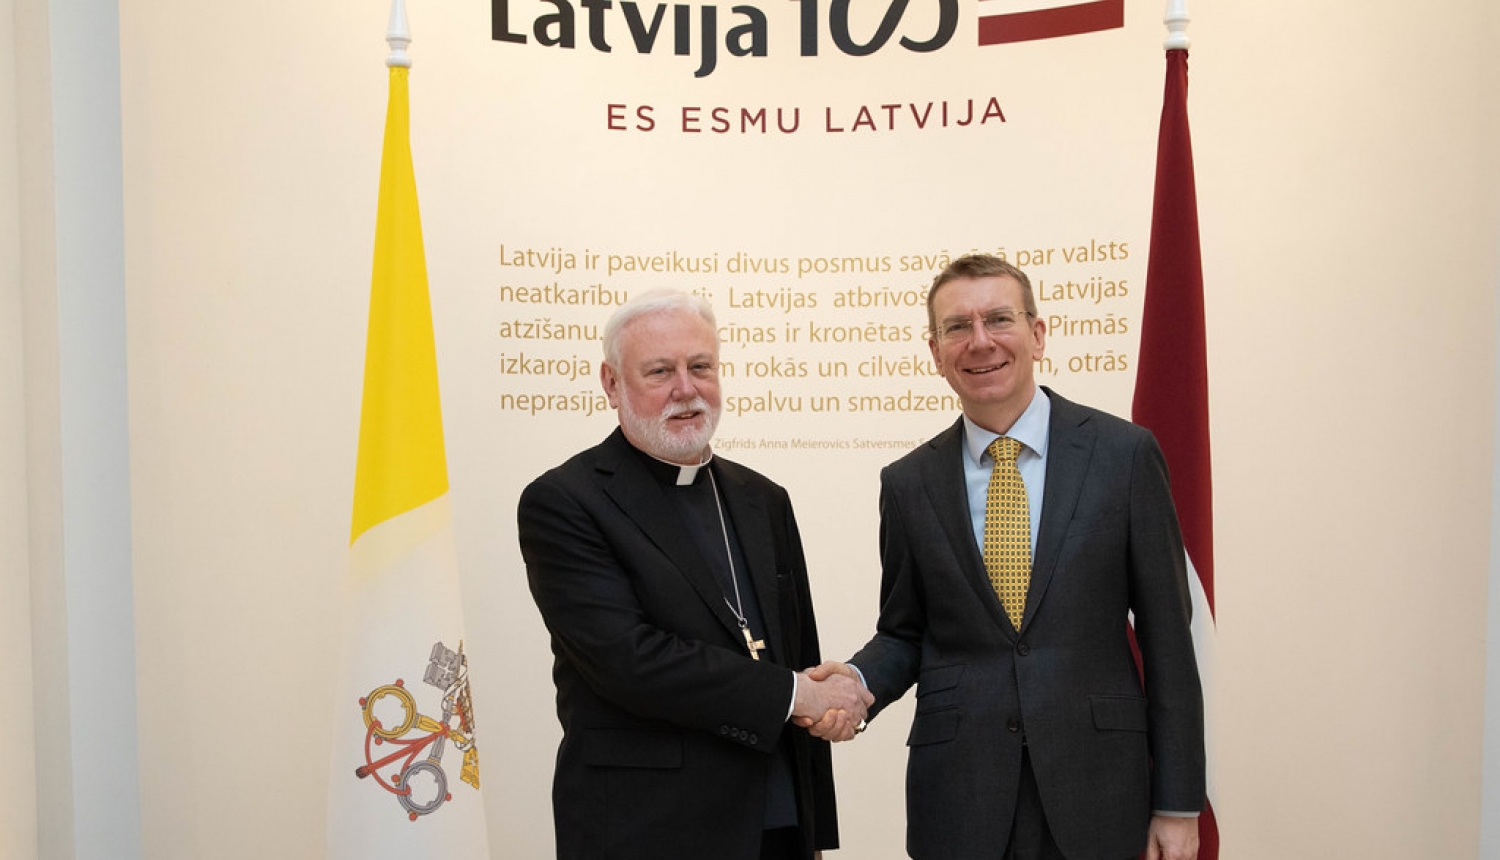 Ārlietu ministrs: Latvija augsti novērtē stingro Svētā Krēsla politiku, vienmēr atbalstot Latviju un valsts okupācijas laikā neatzīstot tās inkorporāciju PSRS